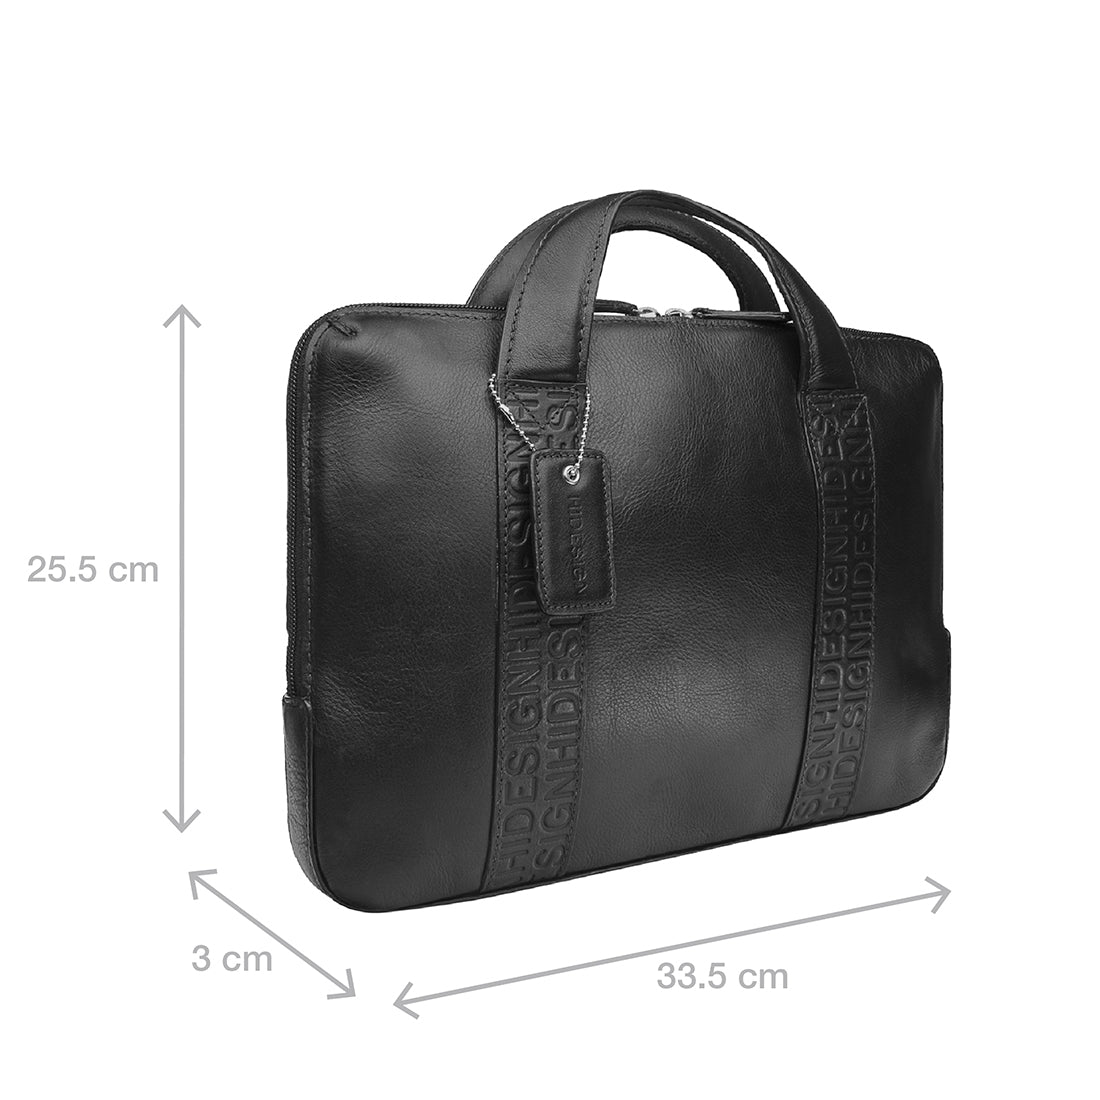 Shop Premium Leather Laptop Bags Online – Hidesign